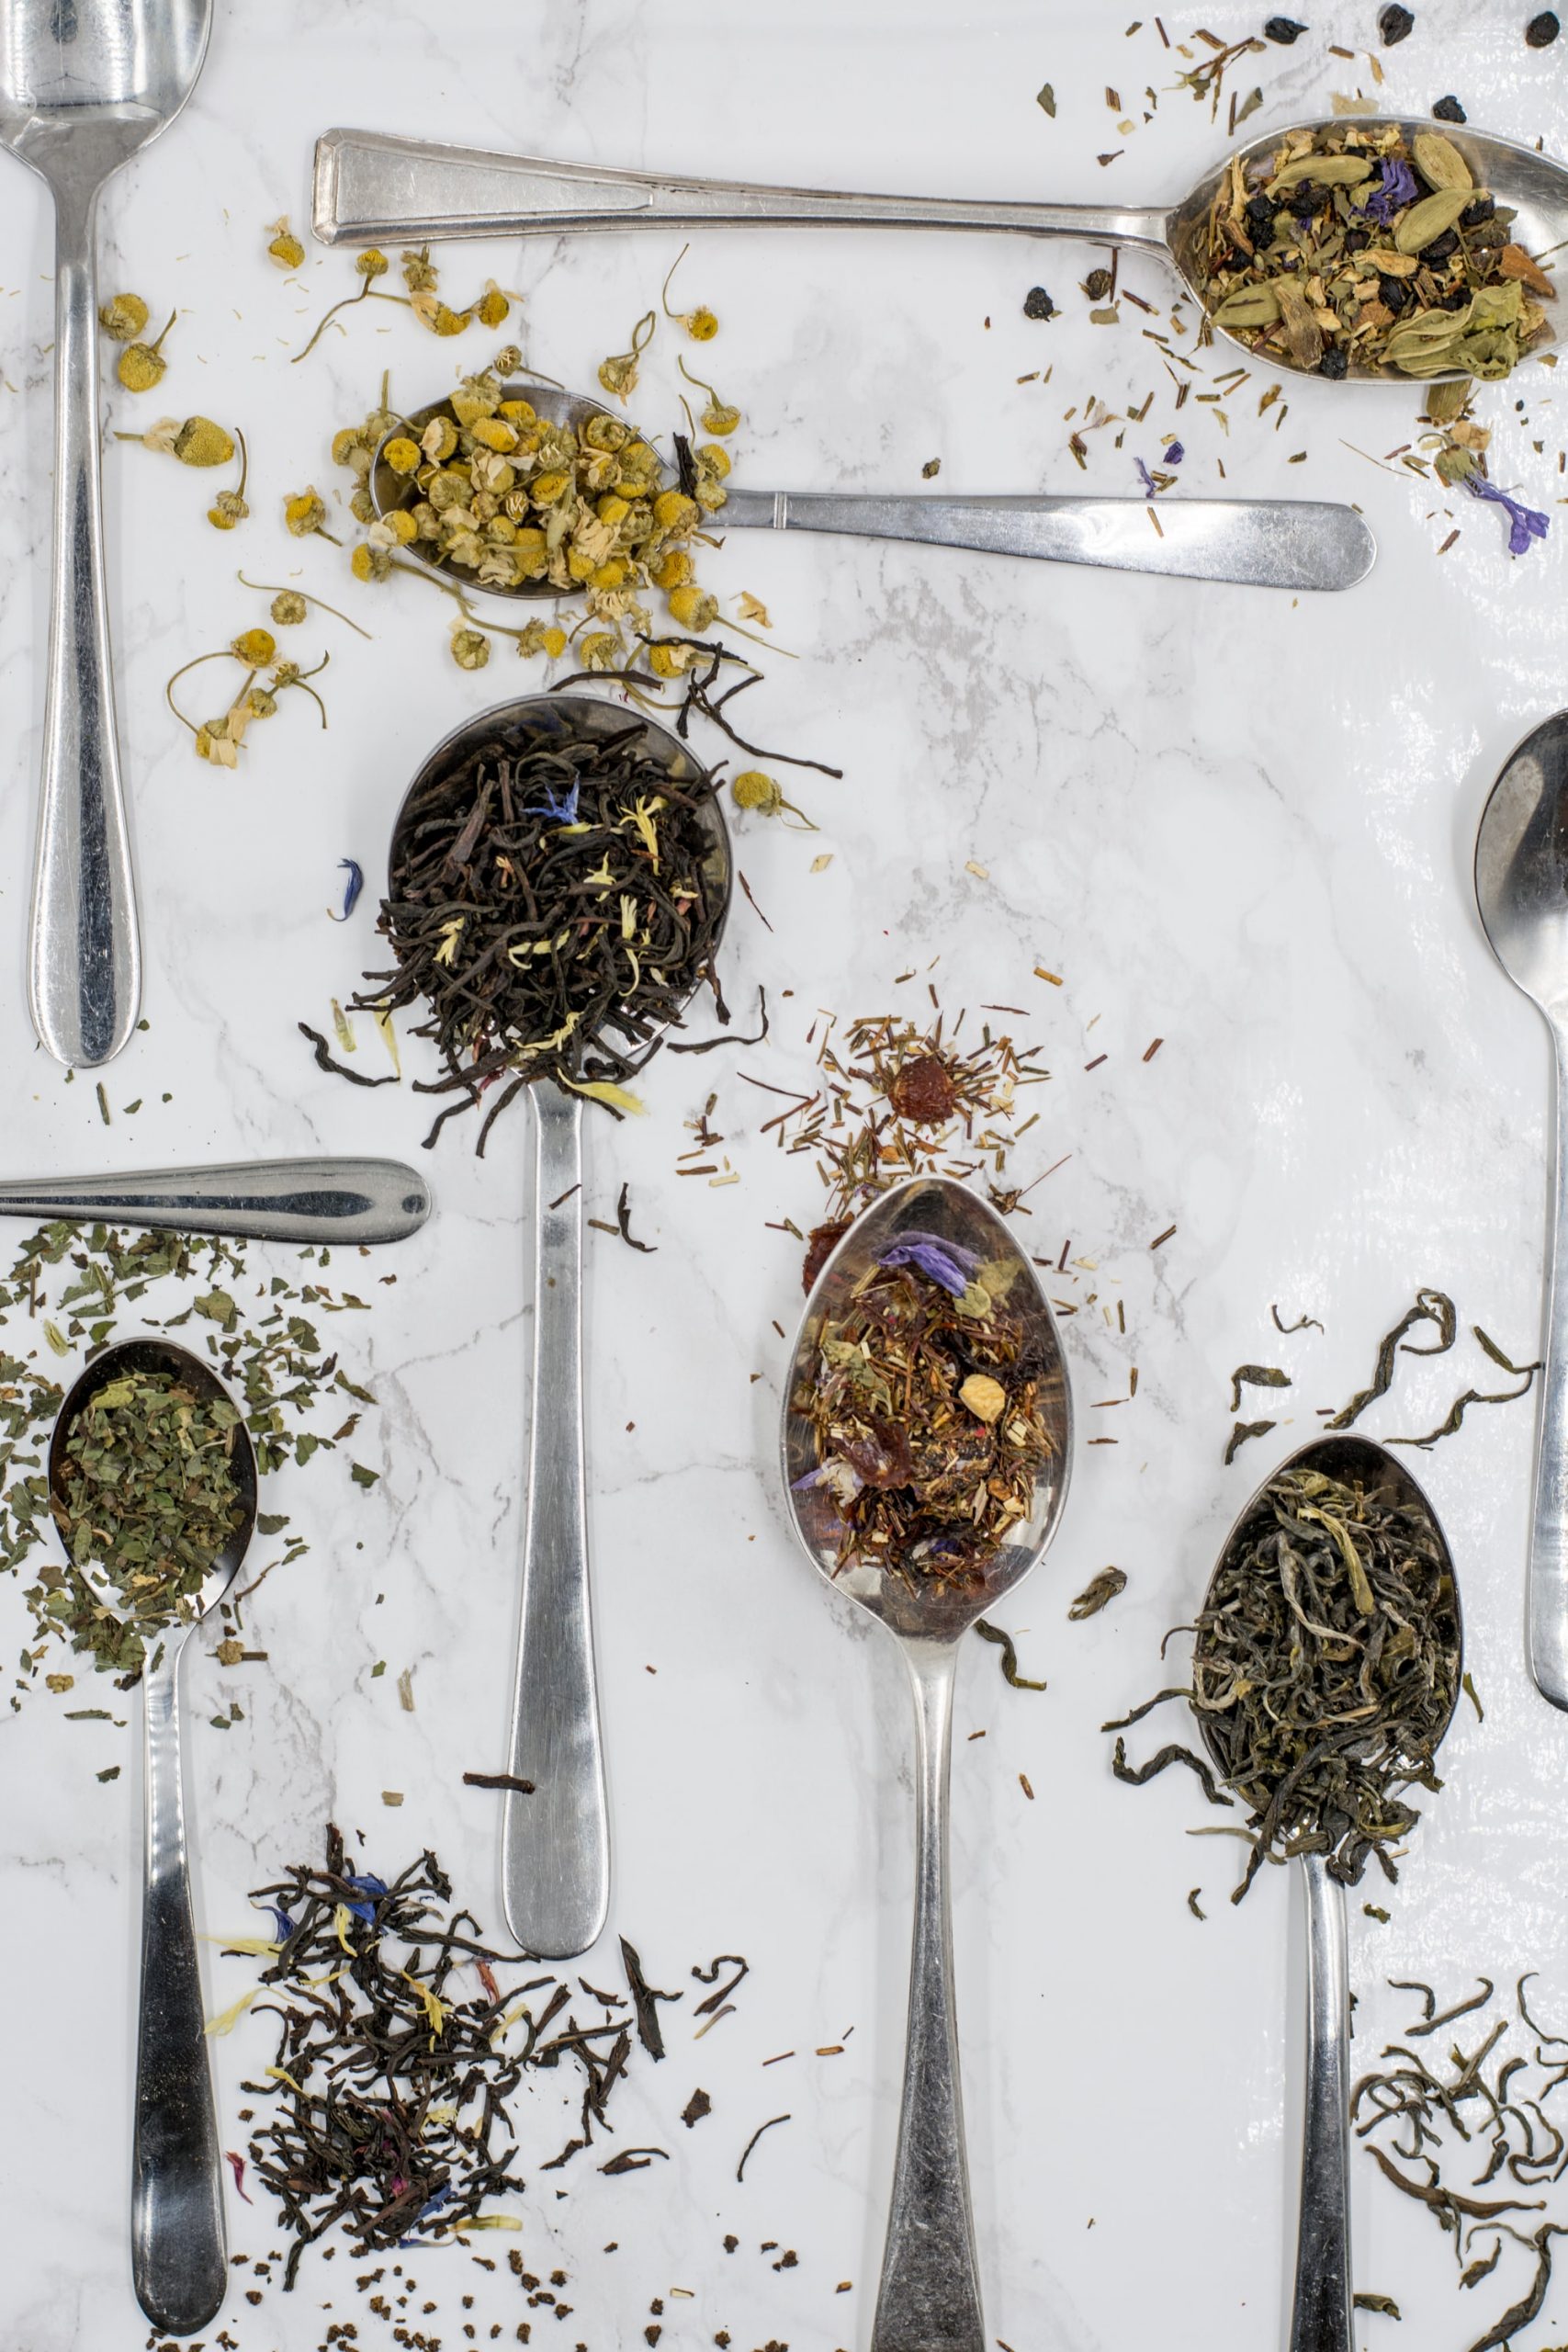 image of tea leaves on spoons